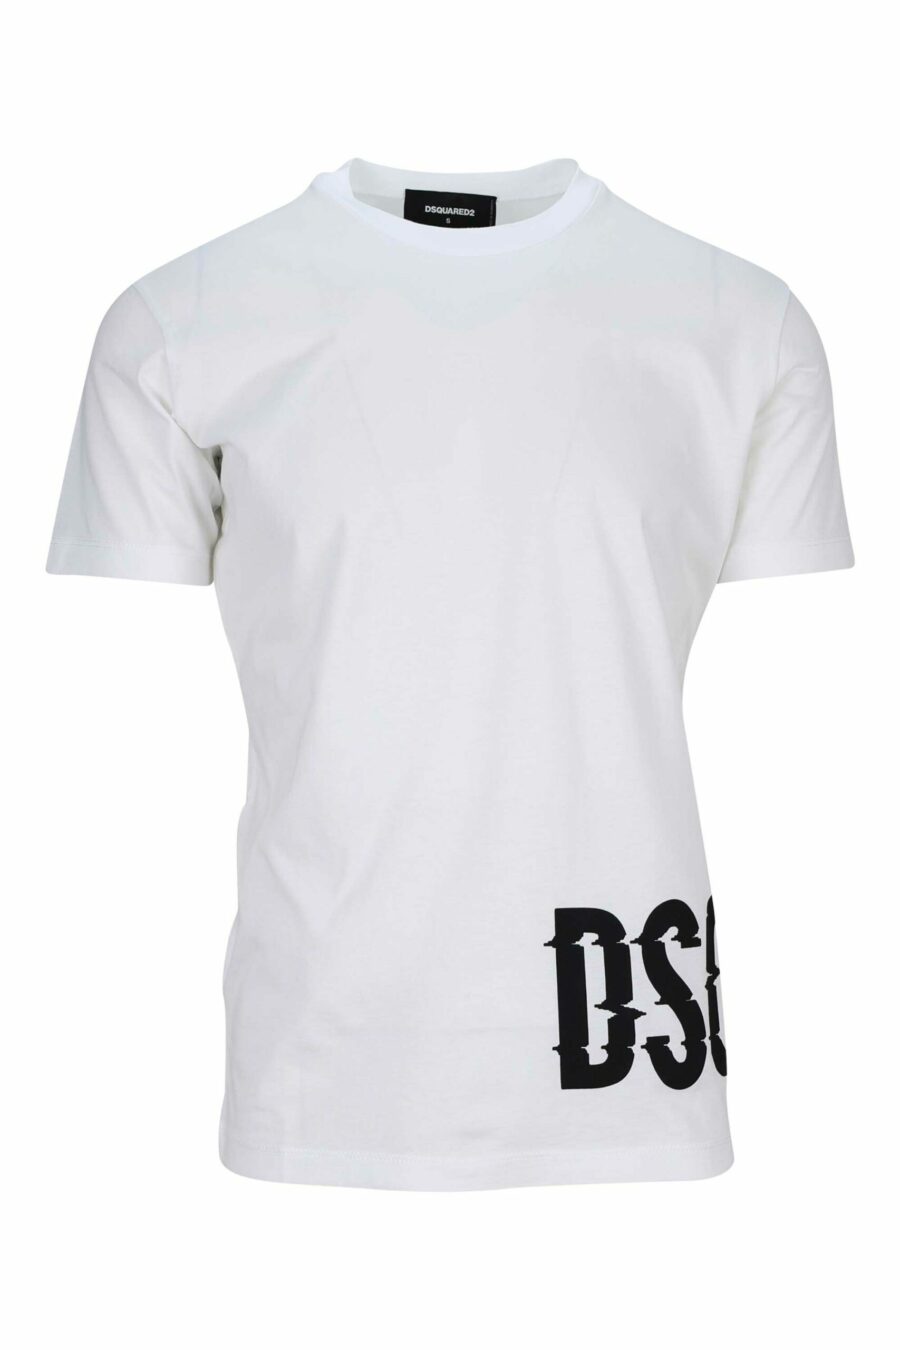 Weißes T-Shirt mit schwarzem verzerrtem Maxilogo darunter - 8054148332730 skaliert